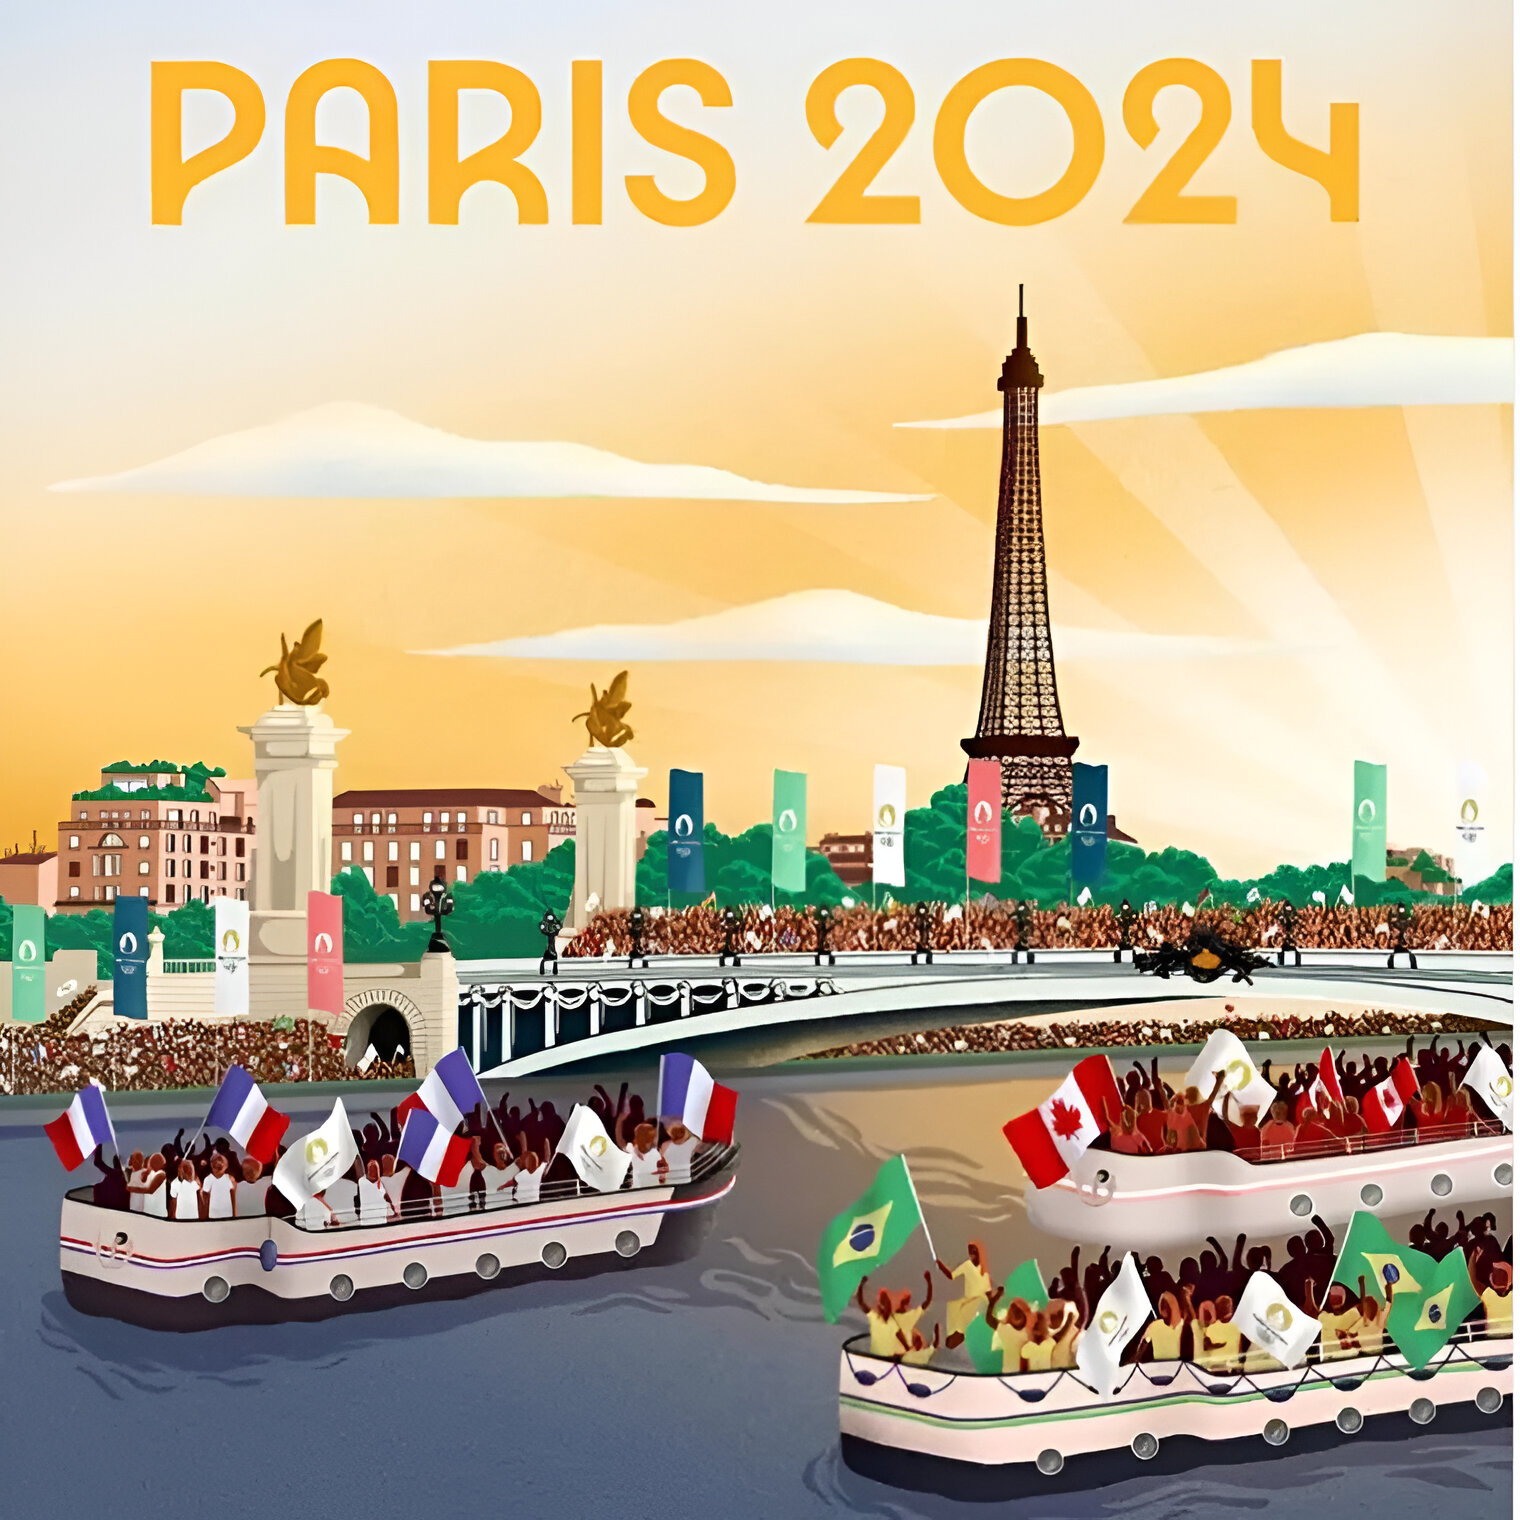 En piste pour les Jeux Olympiques Paris 2024